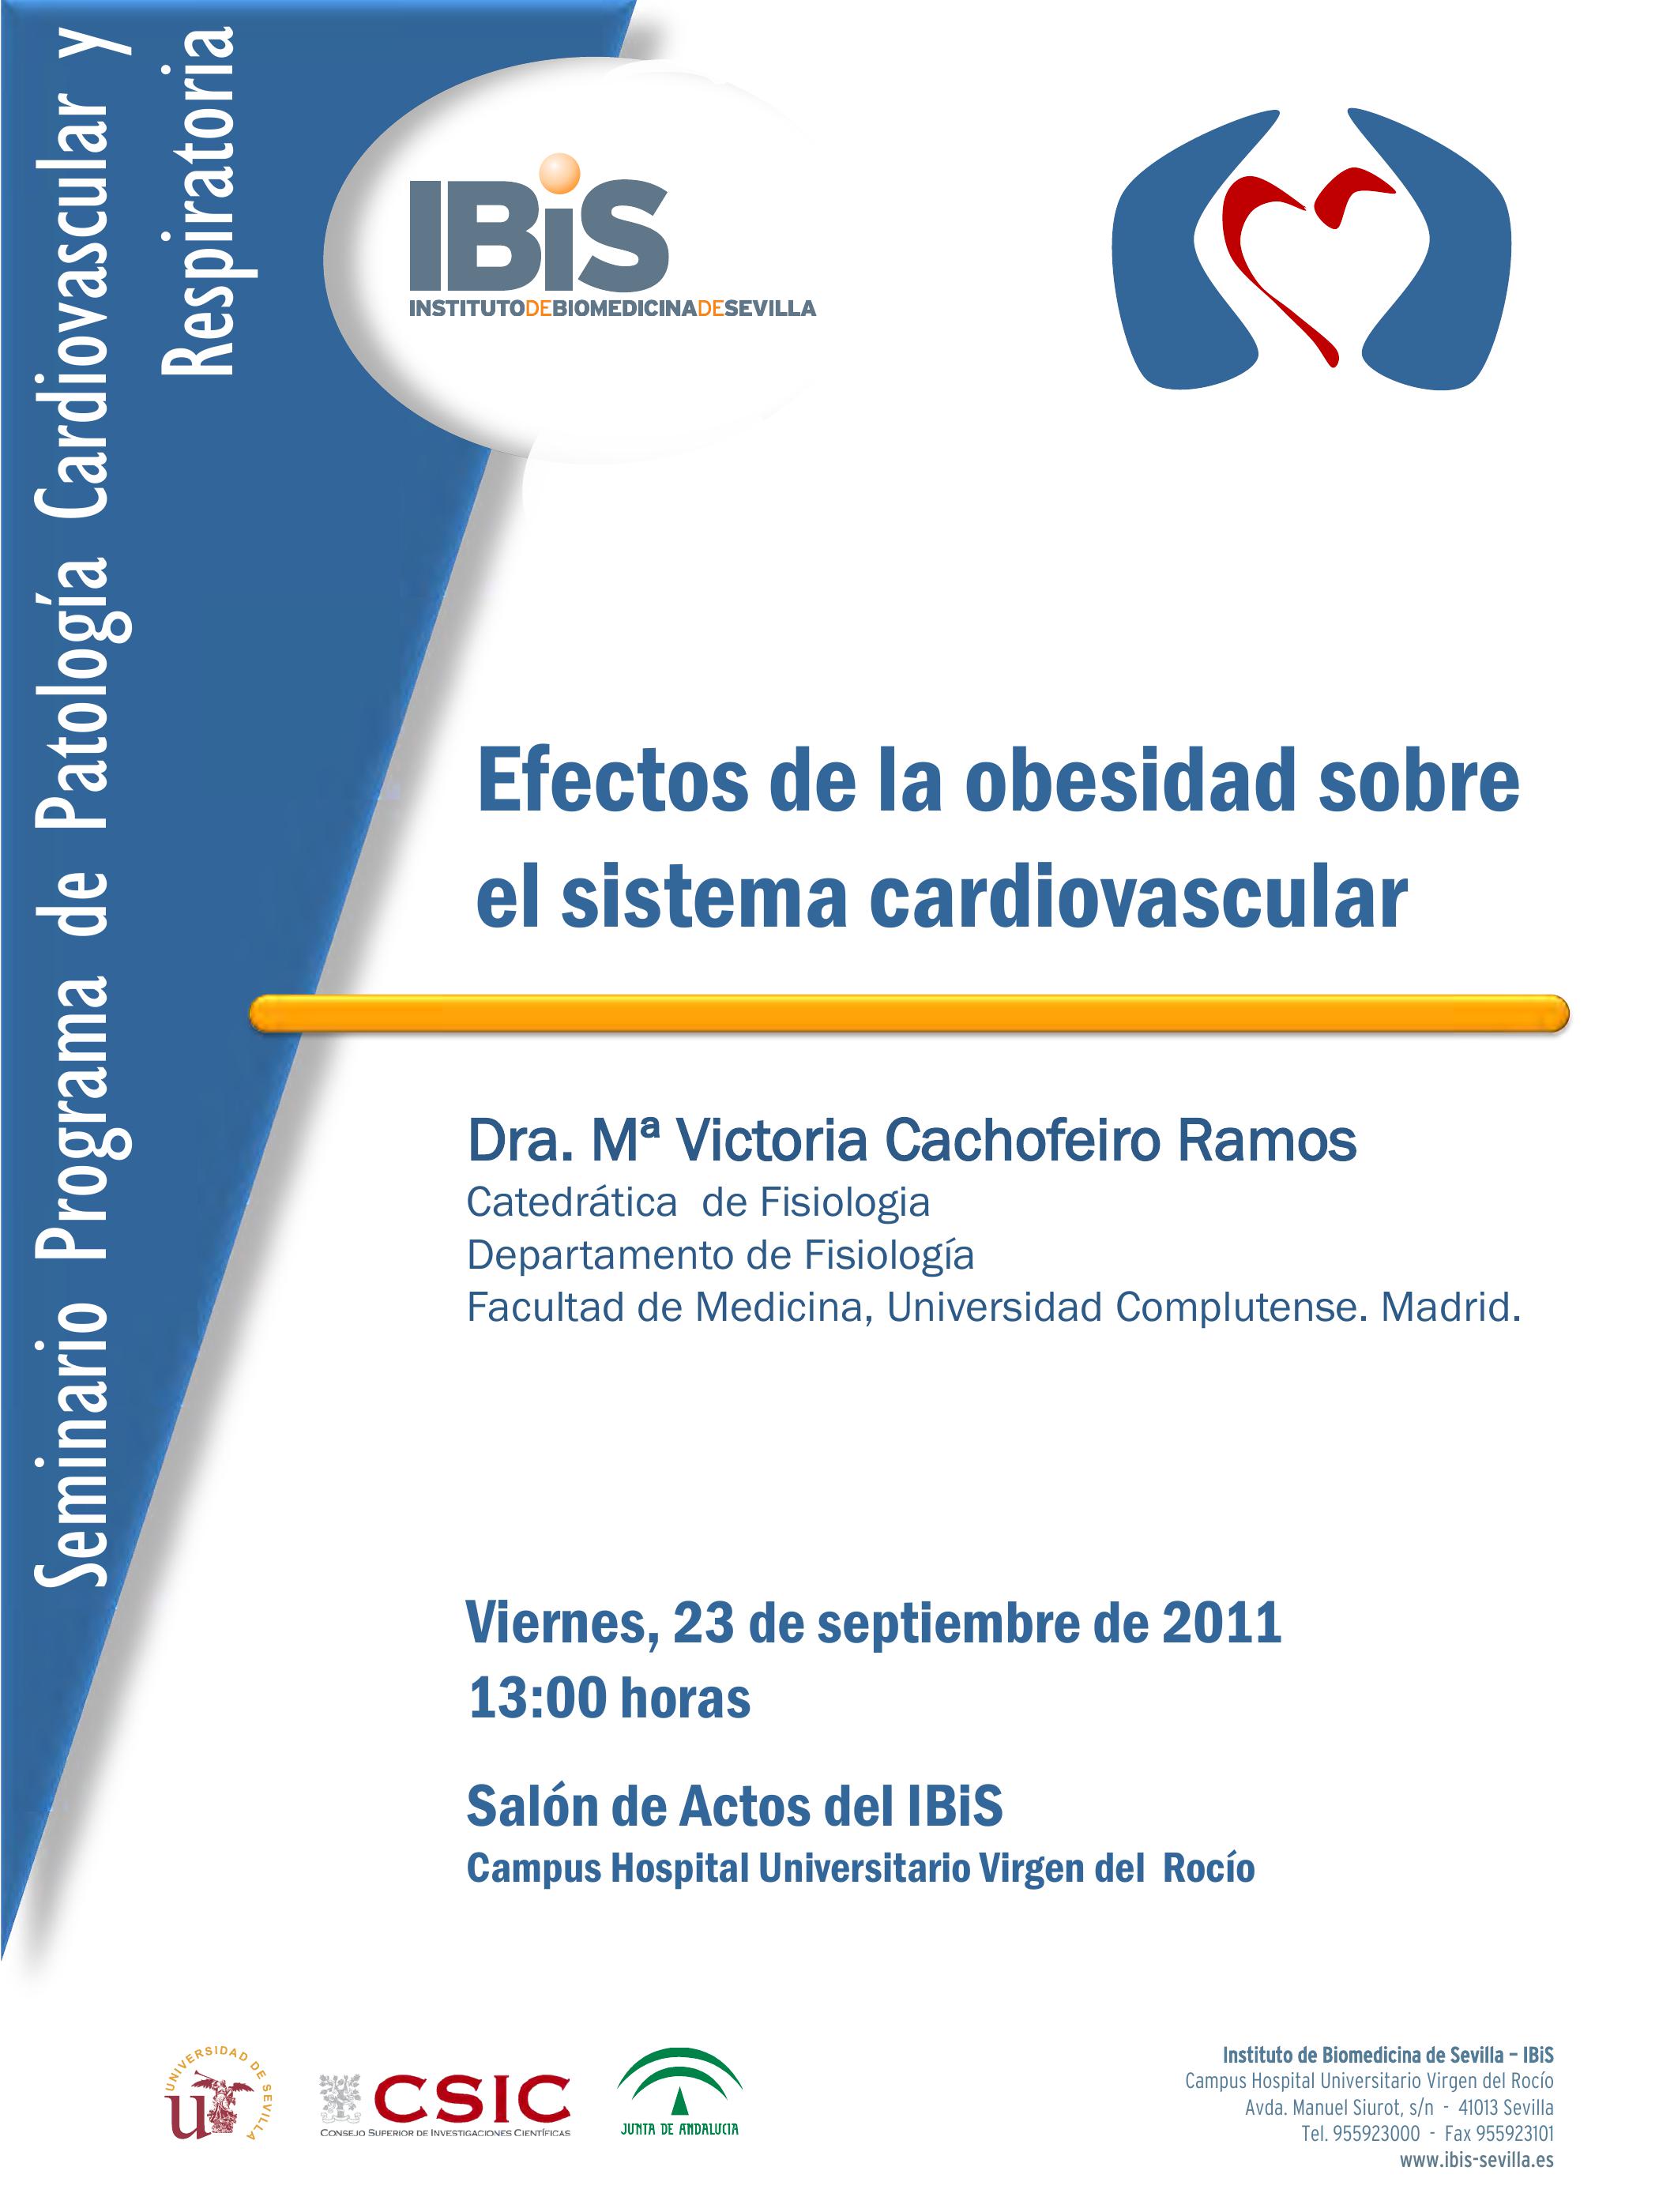 Poster: Efectos de la obesidad sobre el sistema cardiovascular.